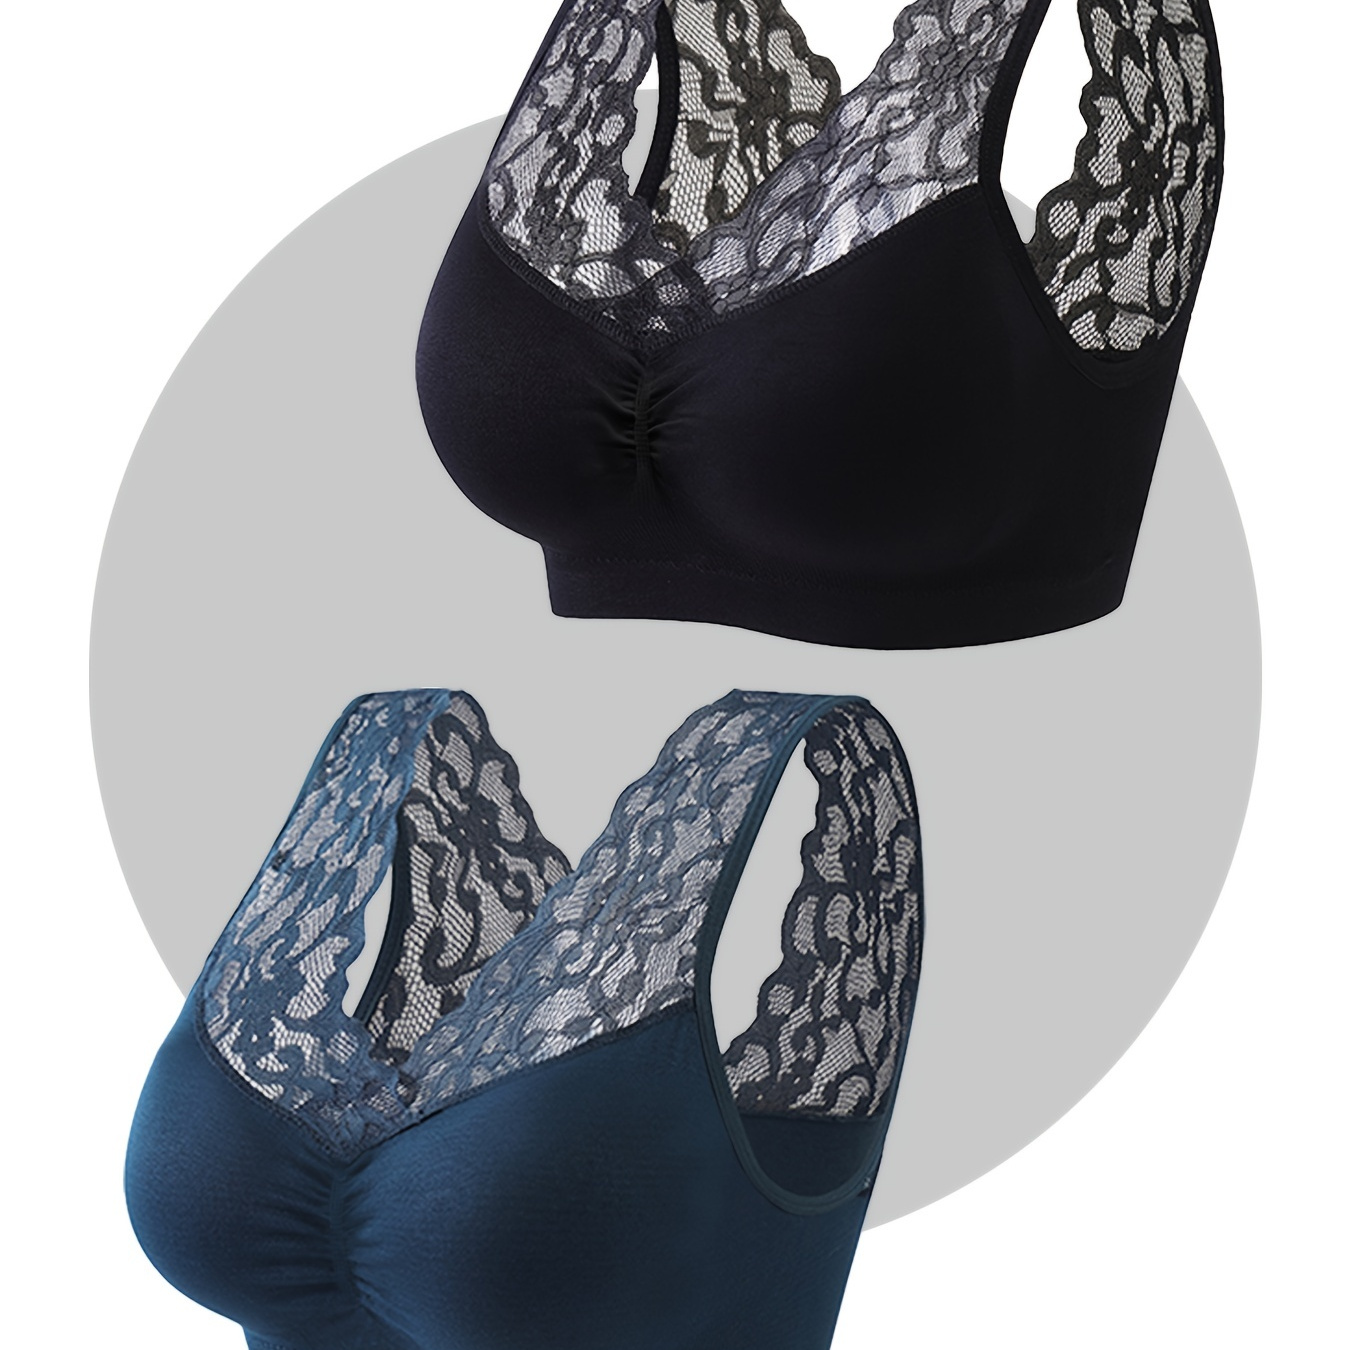 

2pcs Women's Plus Elegant Bras, Plus Size Ruched Contrast Lace High Stretch Comfy & Breathable Bralette